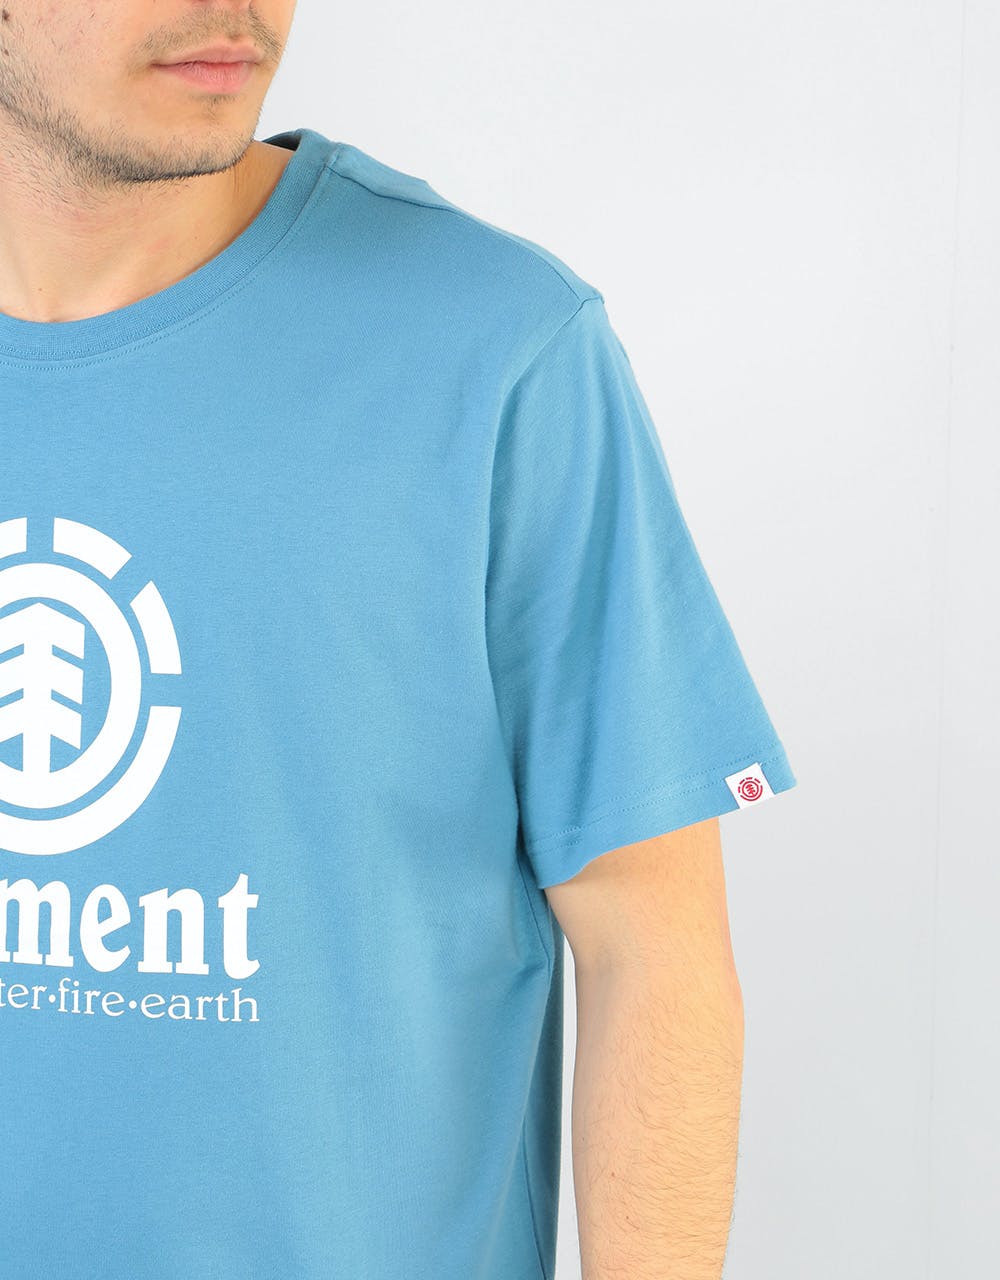 Element Vertical T-Shirt - Niagara